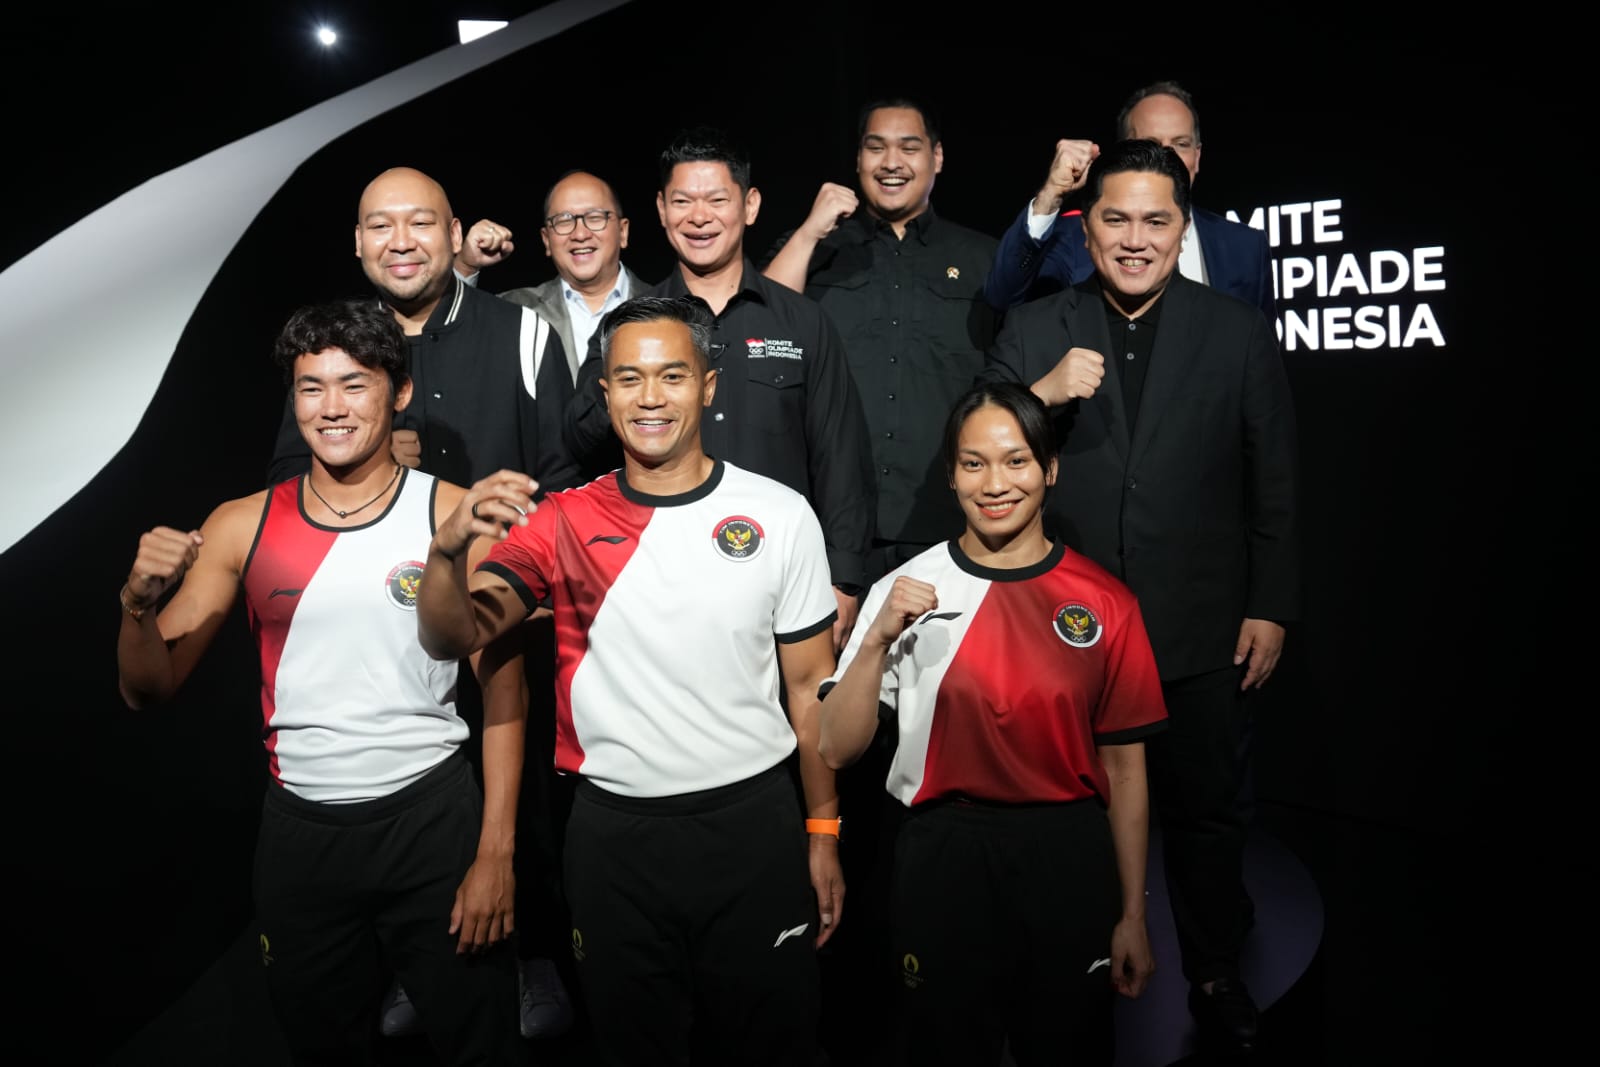 Jersey timnas Indonesia yang didesain langsung oleh desainer Tanah Air Didit Hediprasetyo (Foto/Kemenpora)